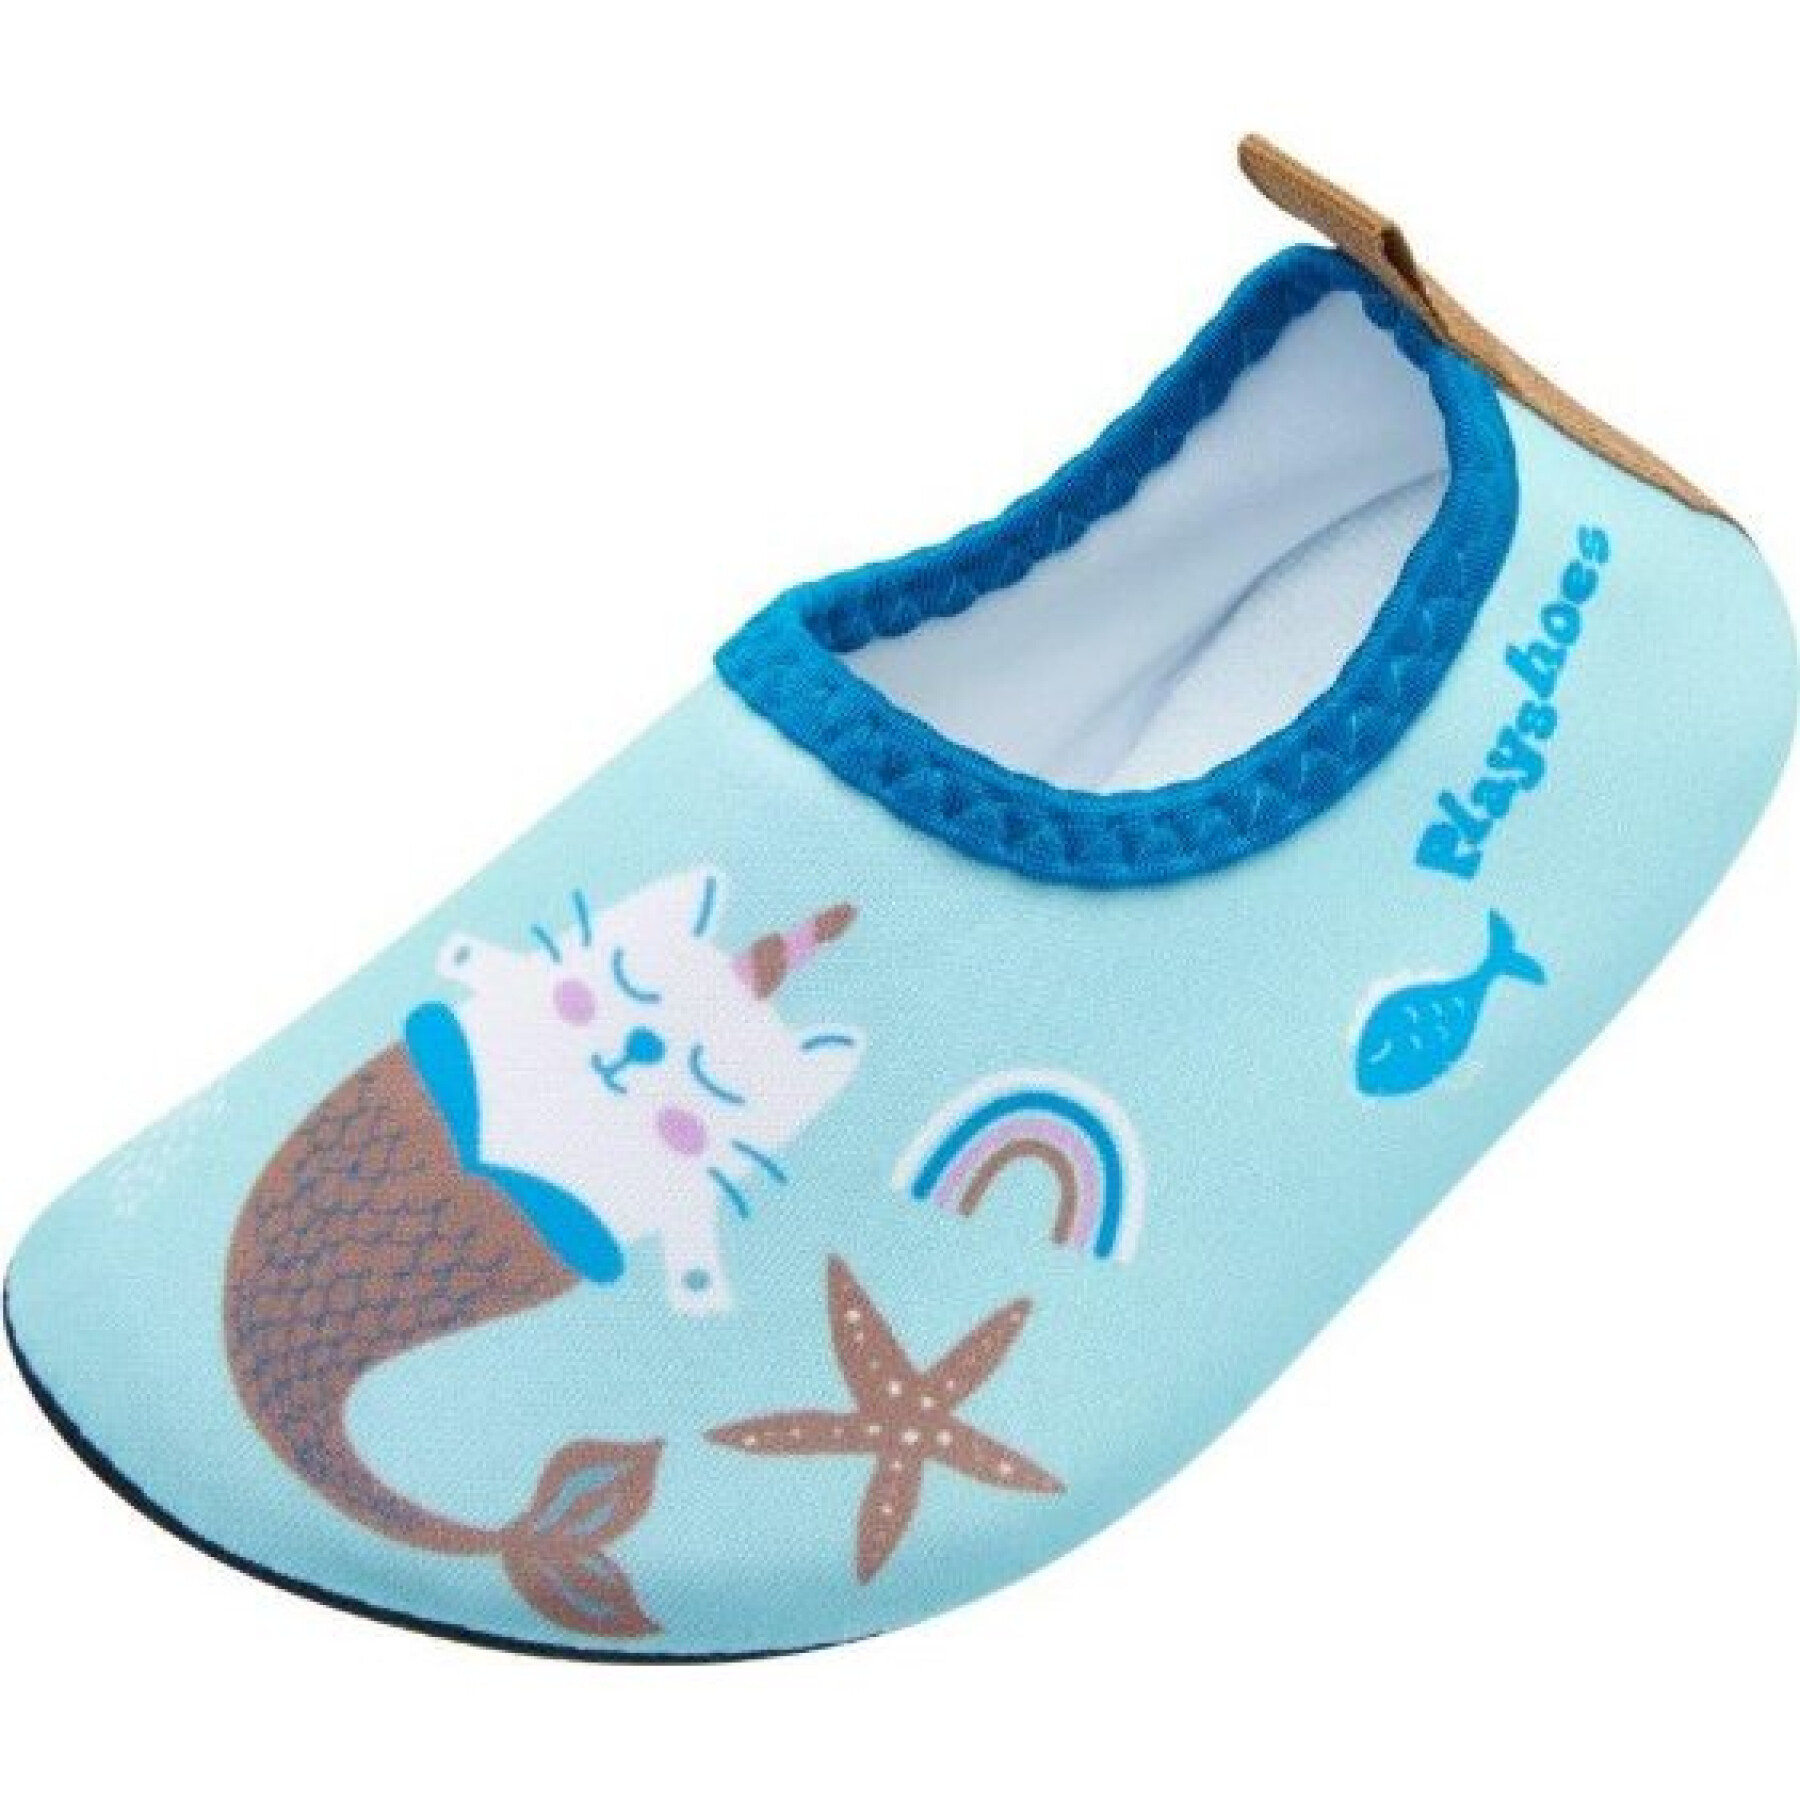 Waterschoenen voor kinderen Playshoes Unicorn Mermaid Cat